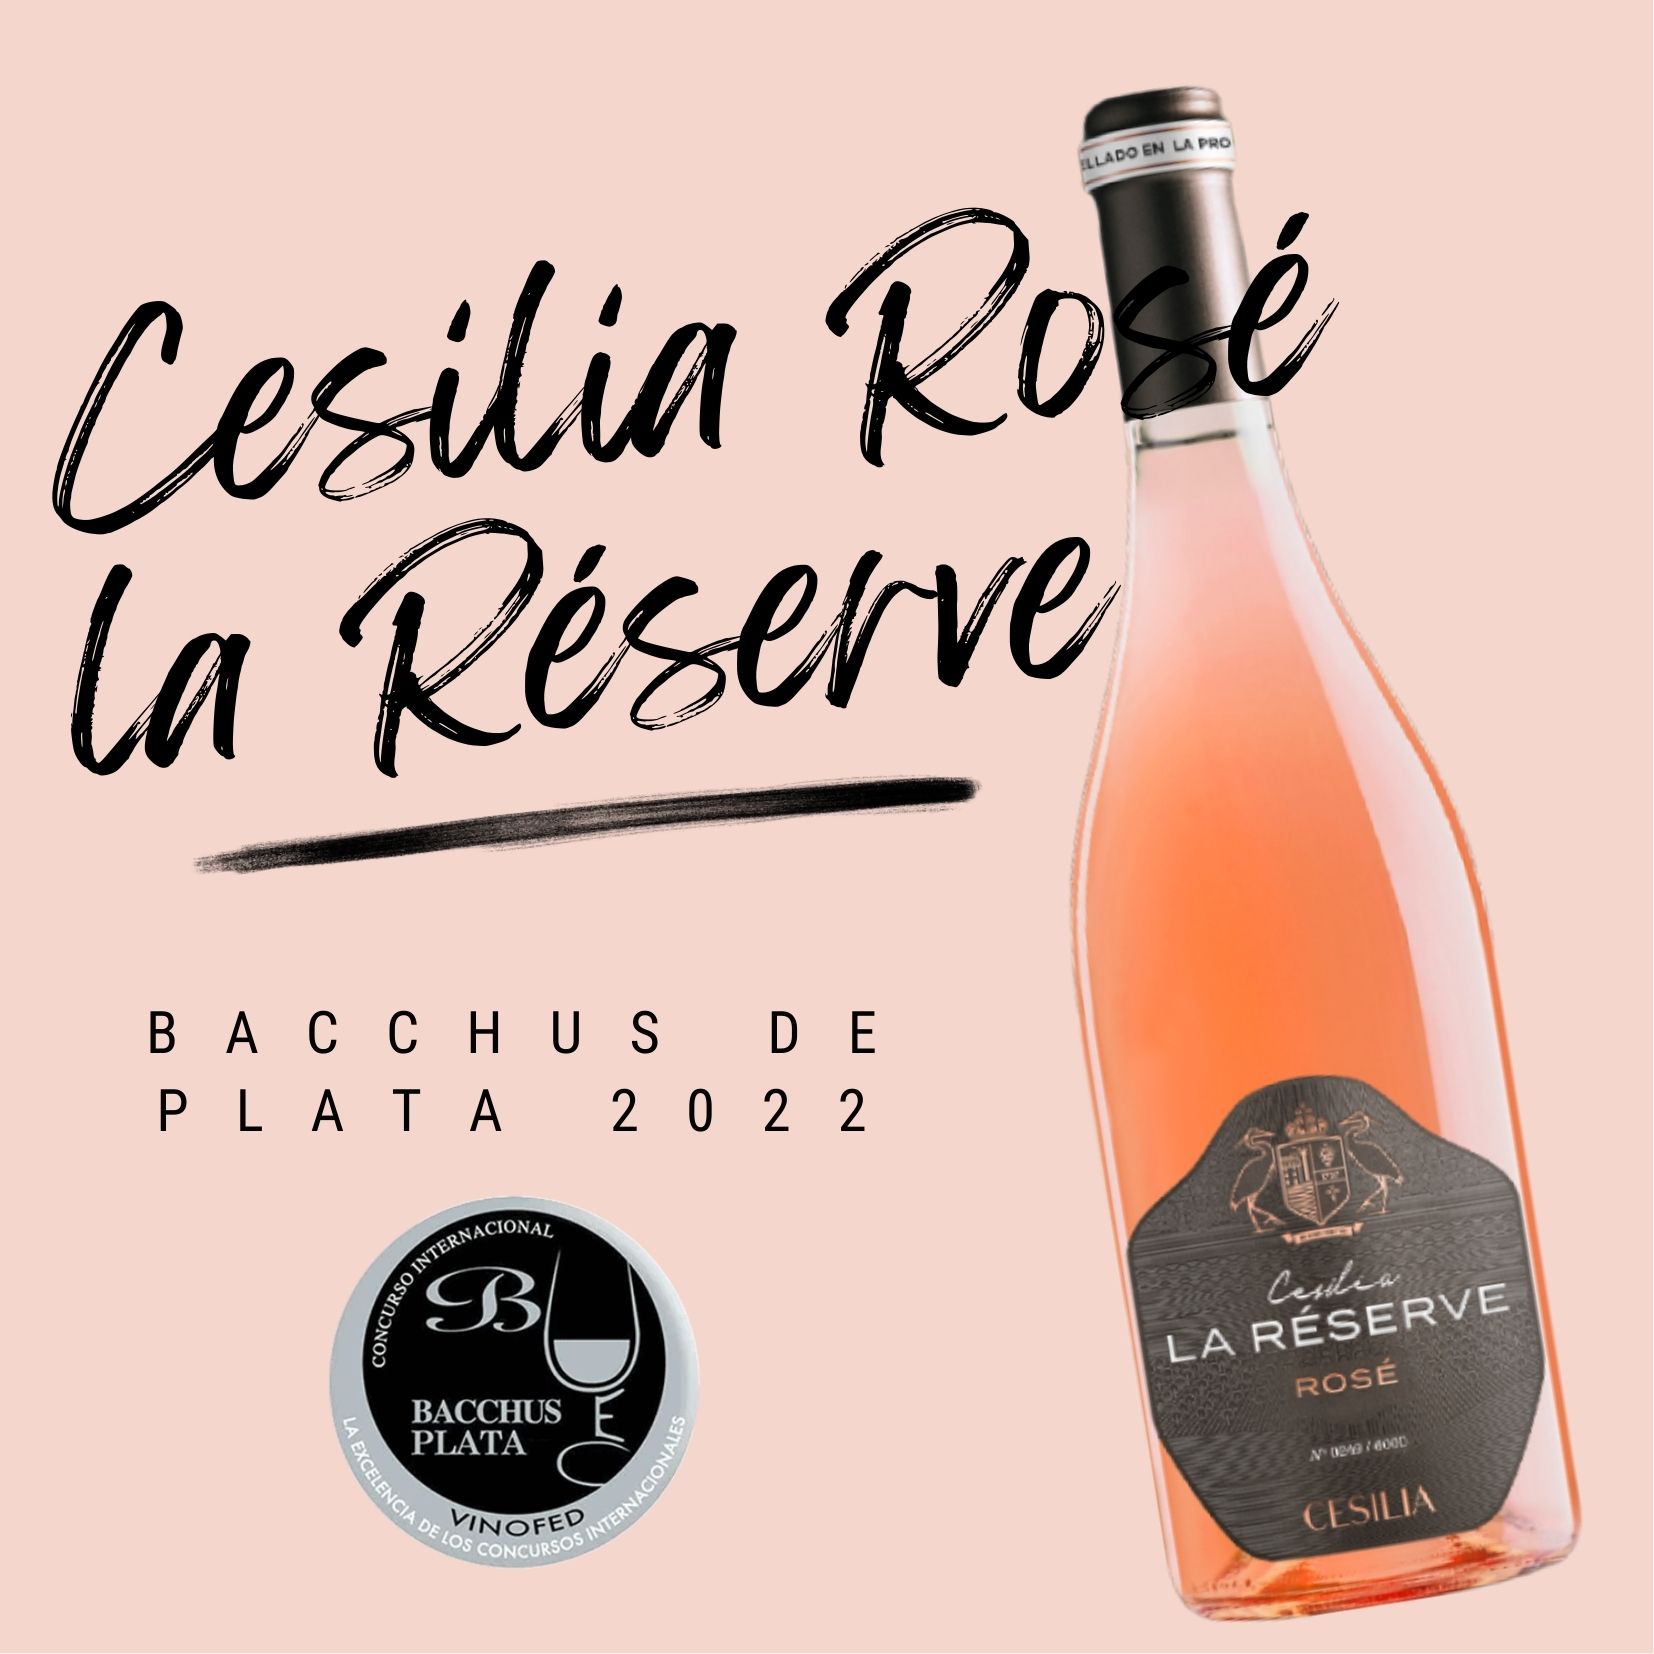 Bacchus de plata - Cesilia La Réserve